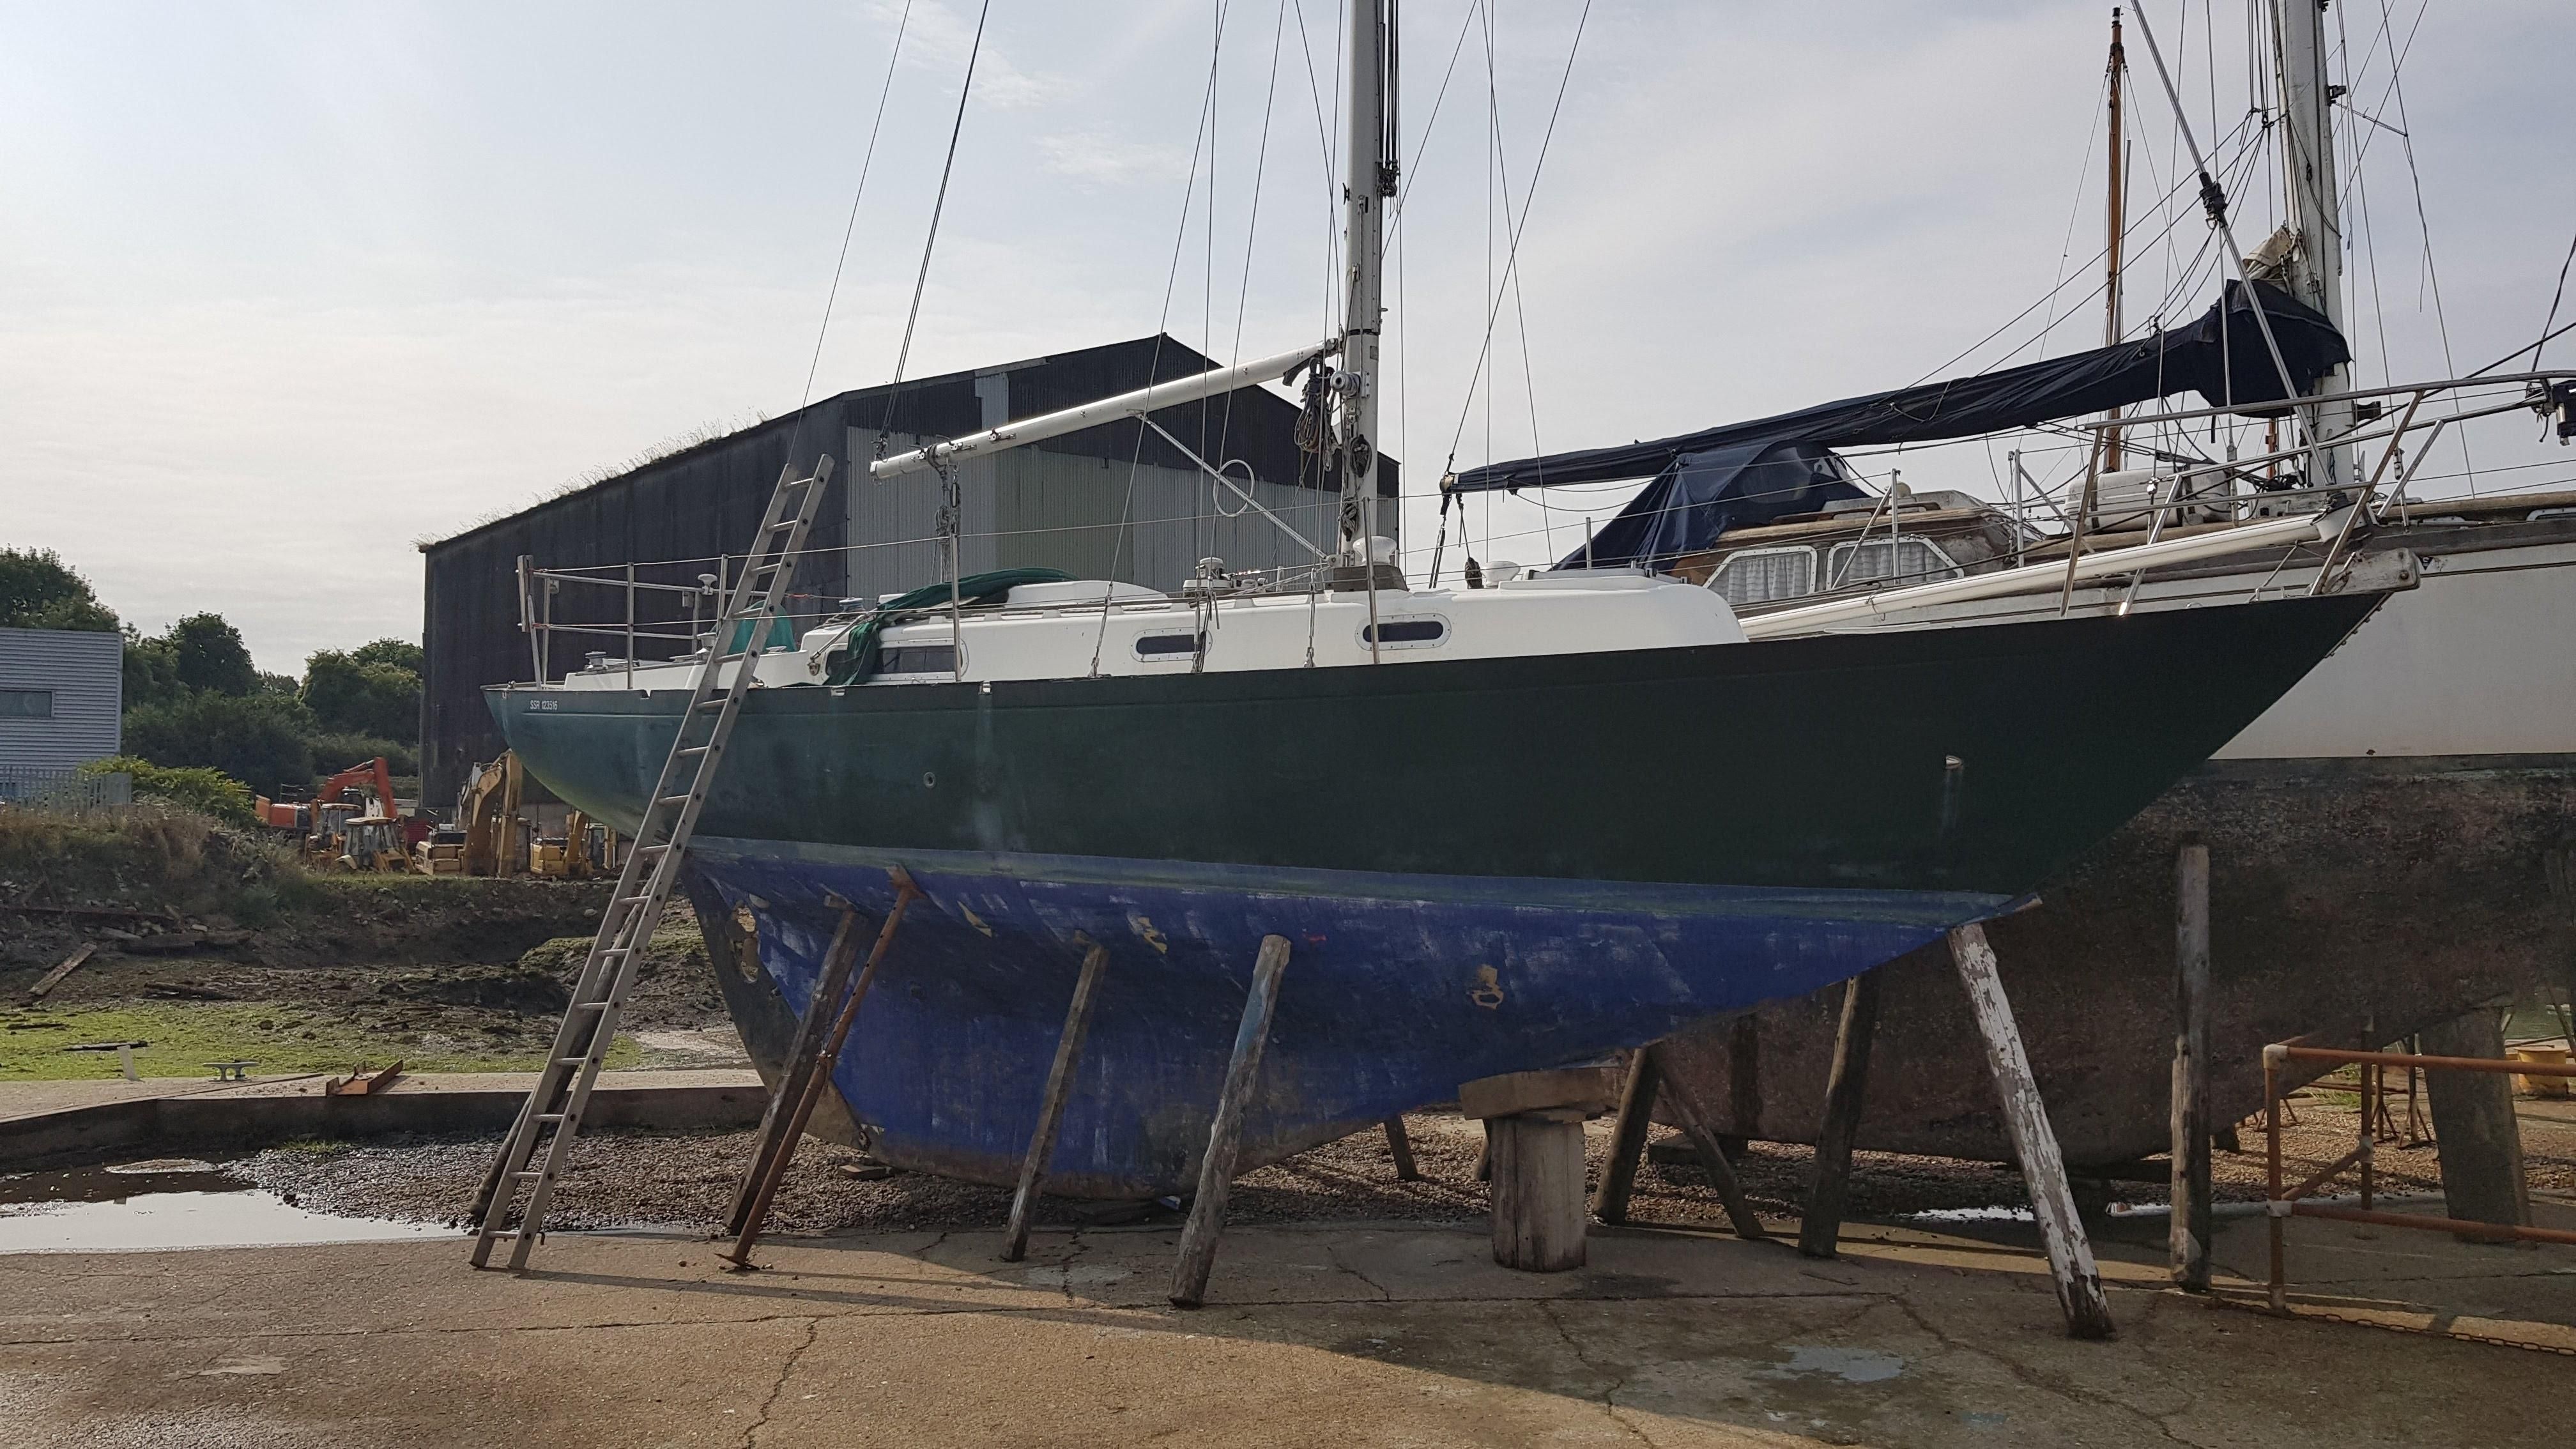 rustler 31 yacht for sale